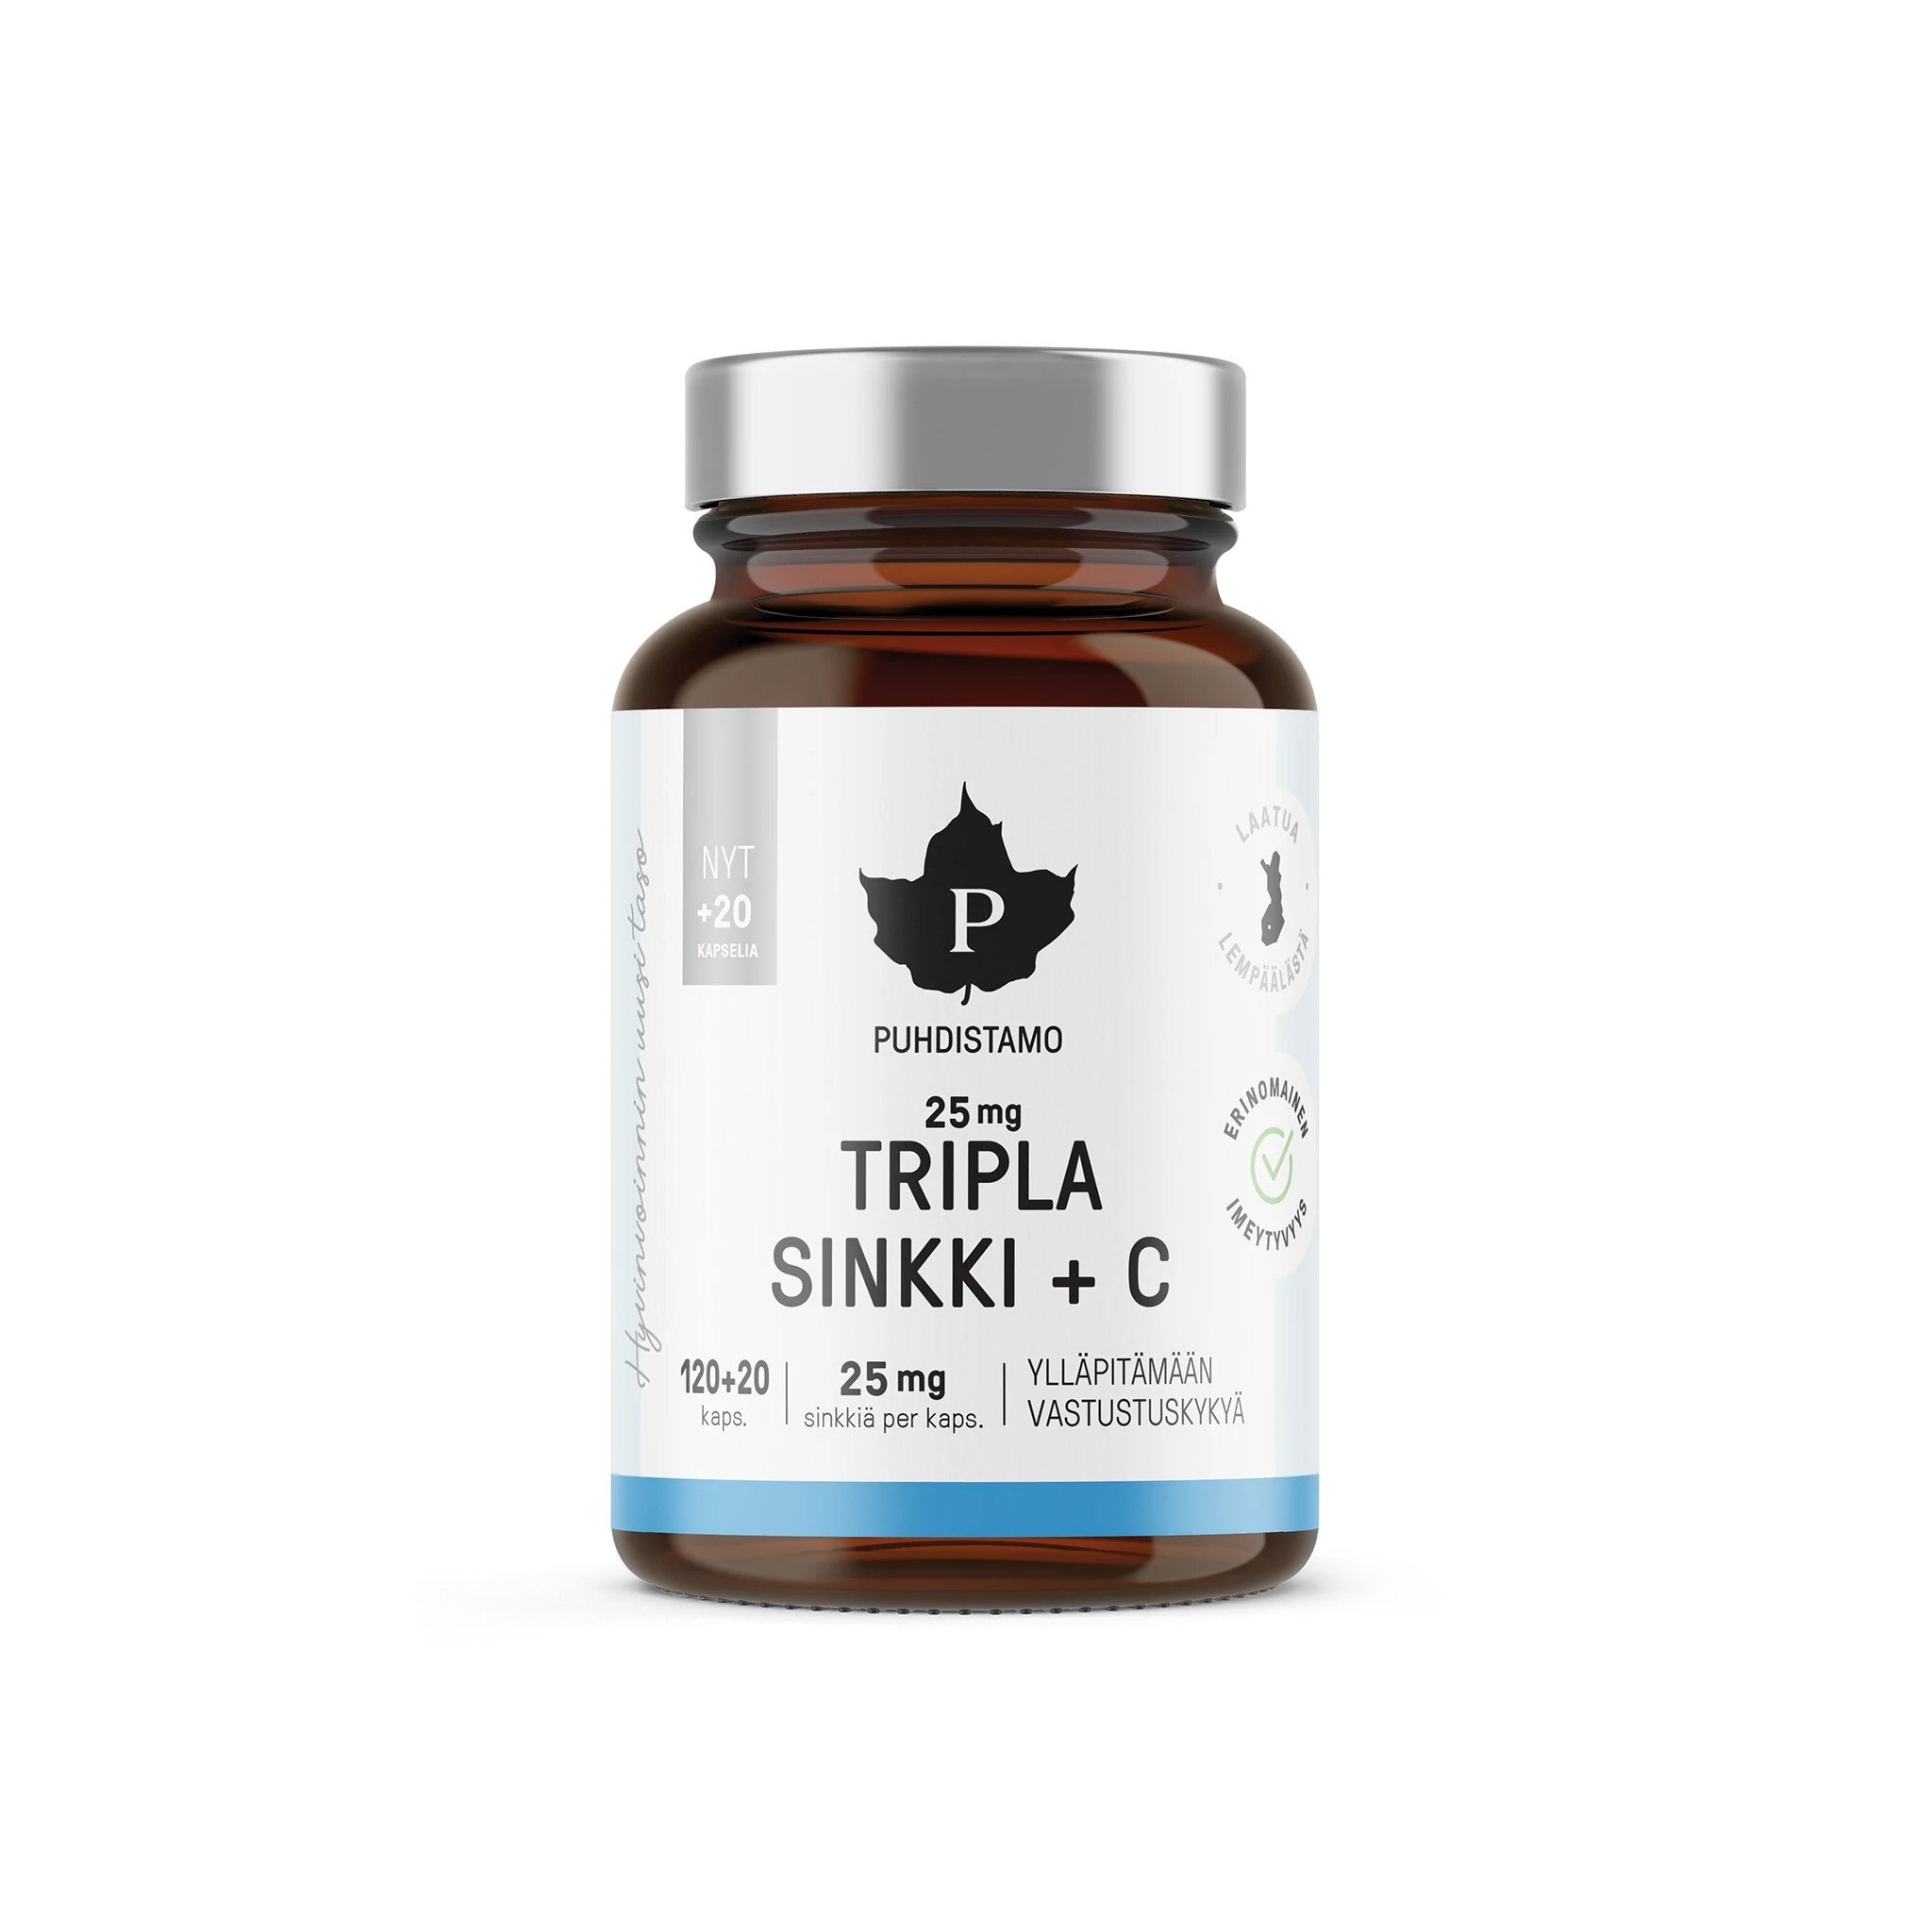 Puhdistamo Tripla Sinkki + C 25 mg